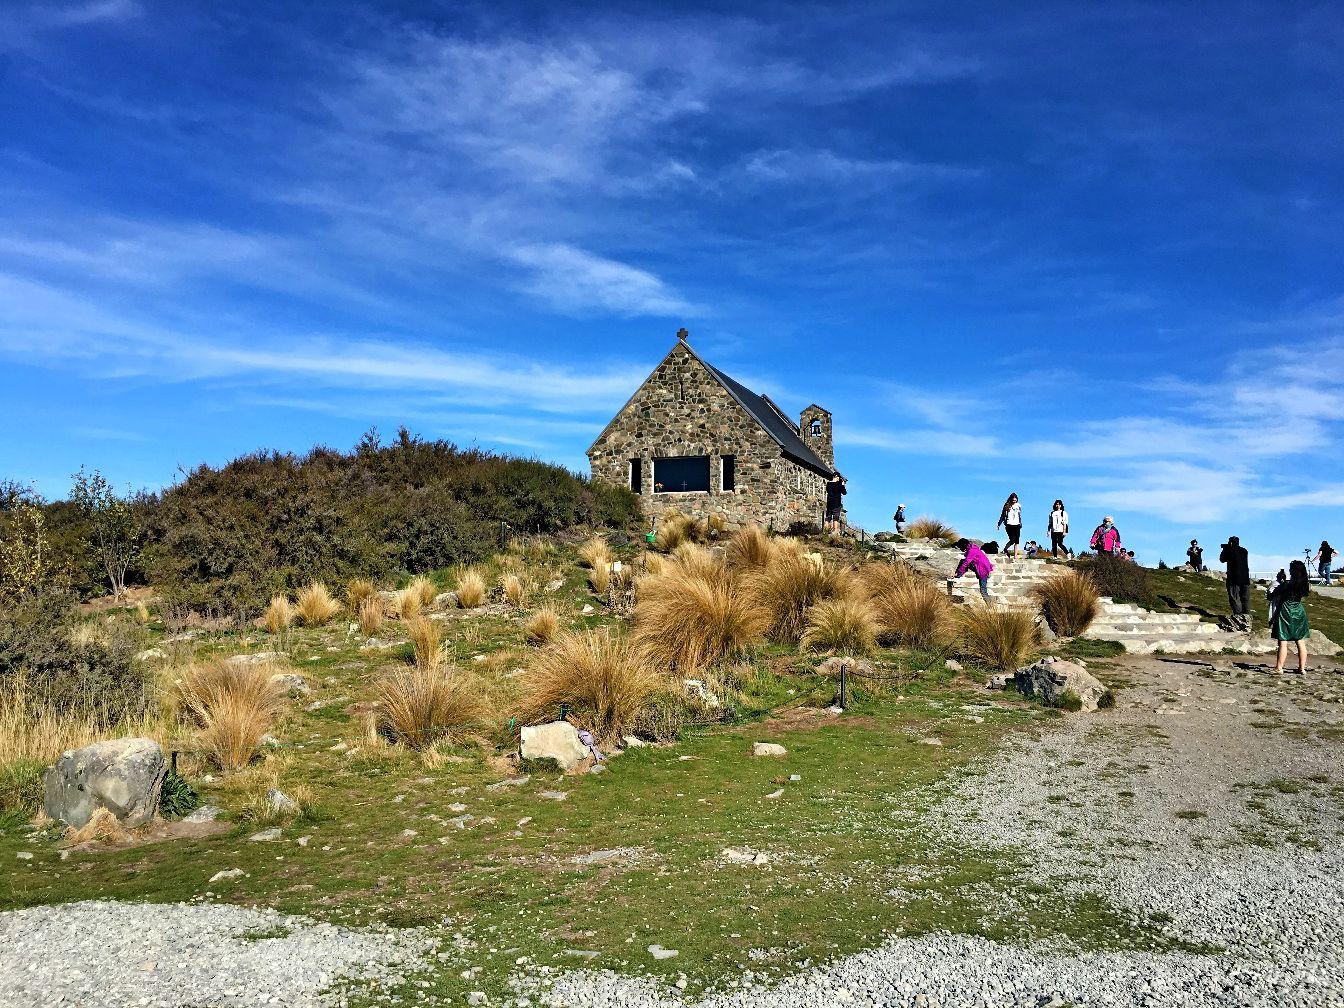 好牧羊人教堂，这座漂亮的石教堂位于新西兰的特卡波湖岸边，背景是辽阔的山水风景，许多新人选择在这里婚礼